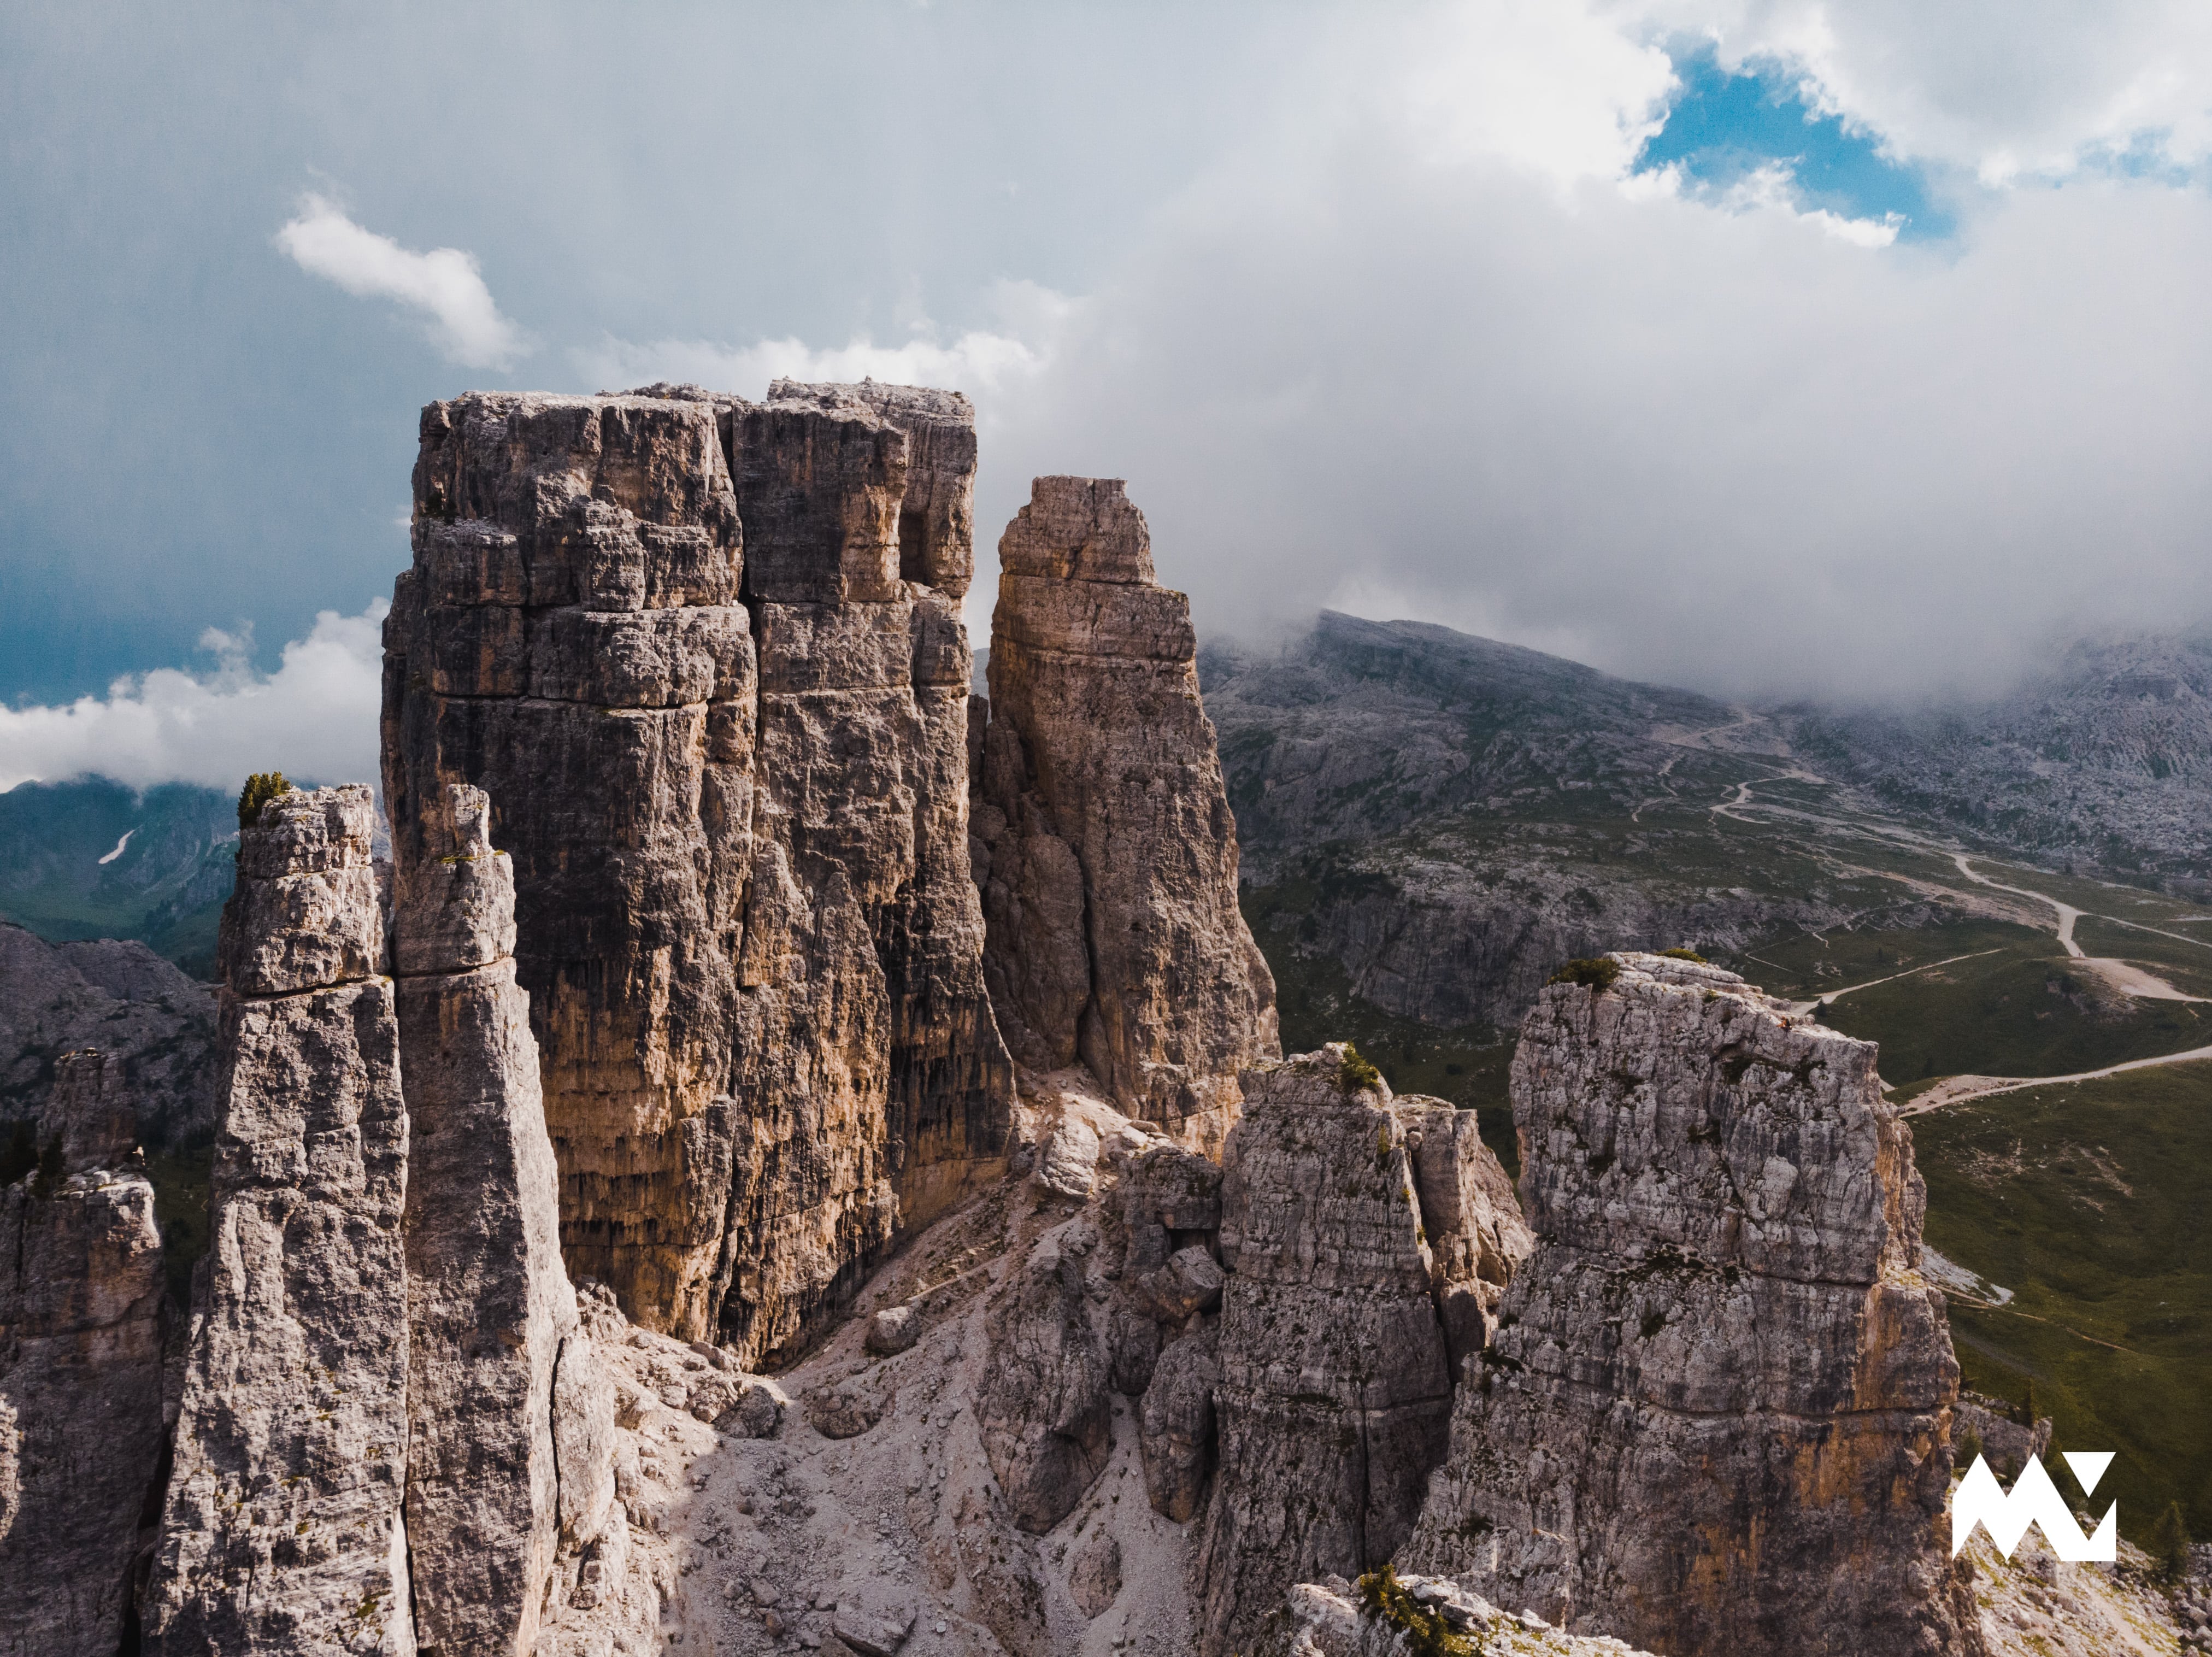 The Cinque Torri towers of the Dolomites